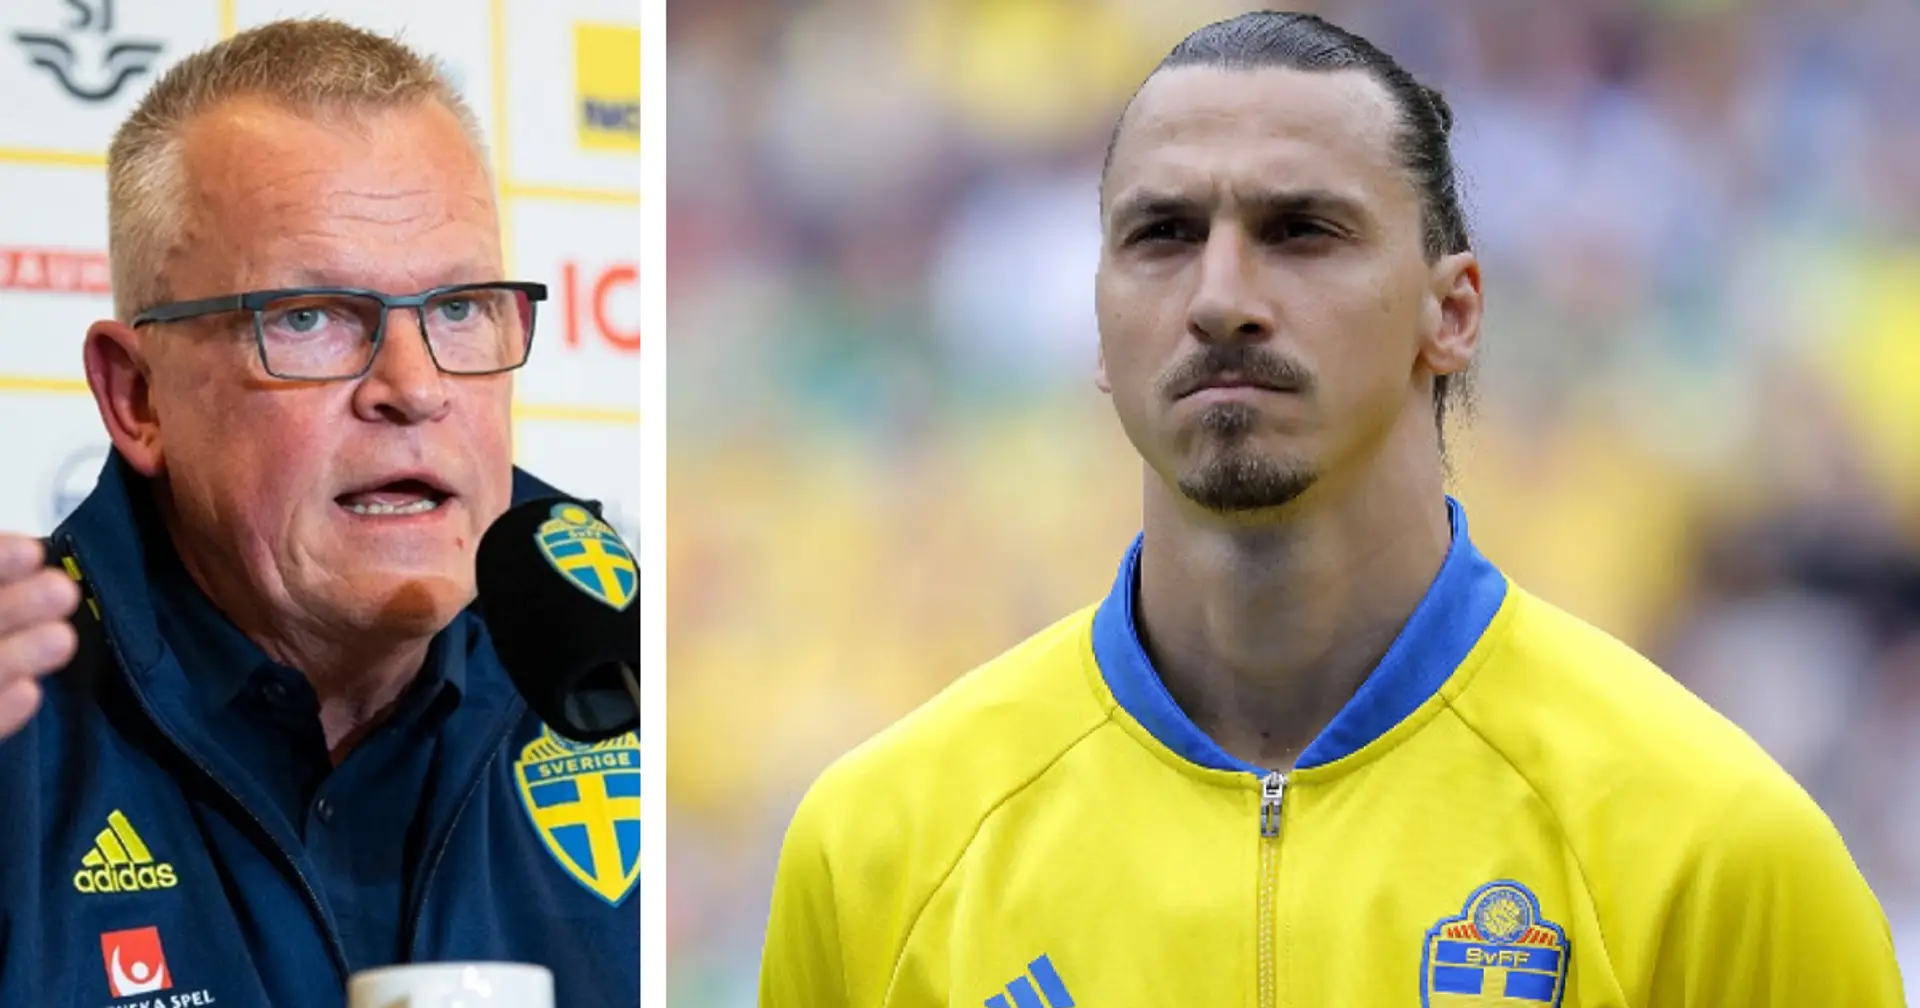 Il CT della Svezia incorona Ibrahimovic: "Sta tornando, la sua leadership aiuterà la squadra"